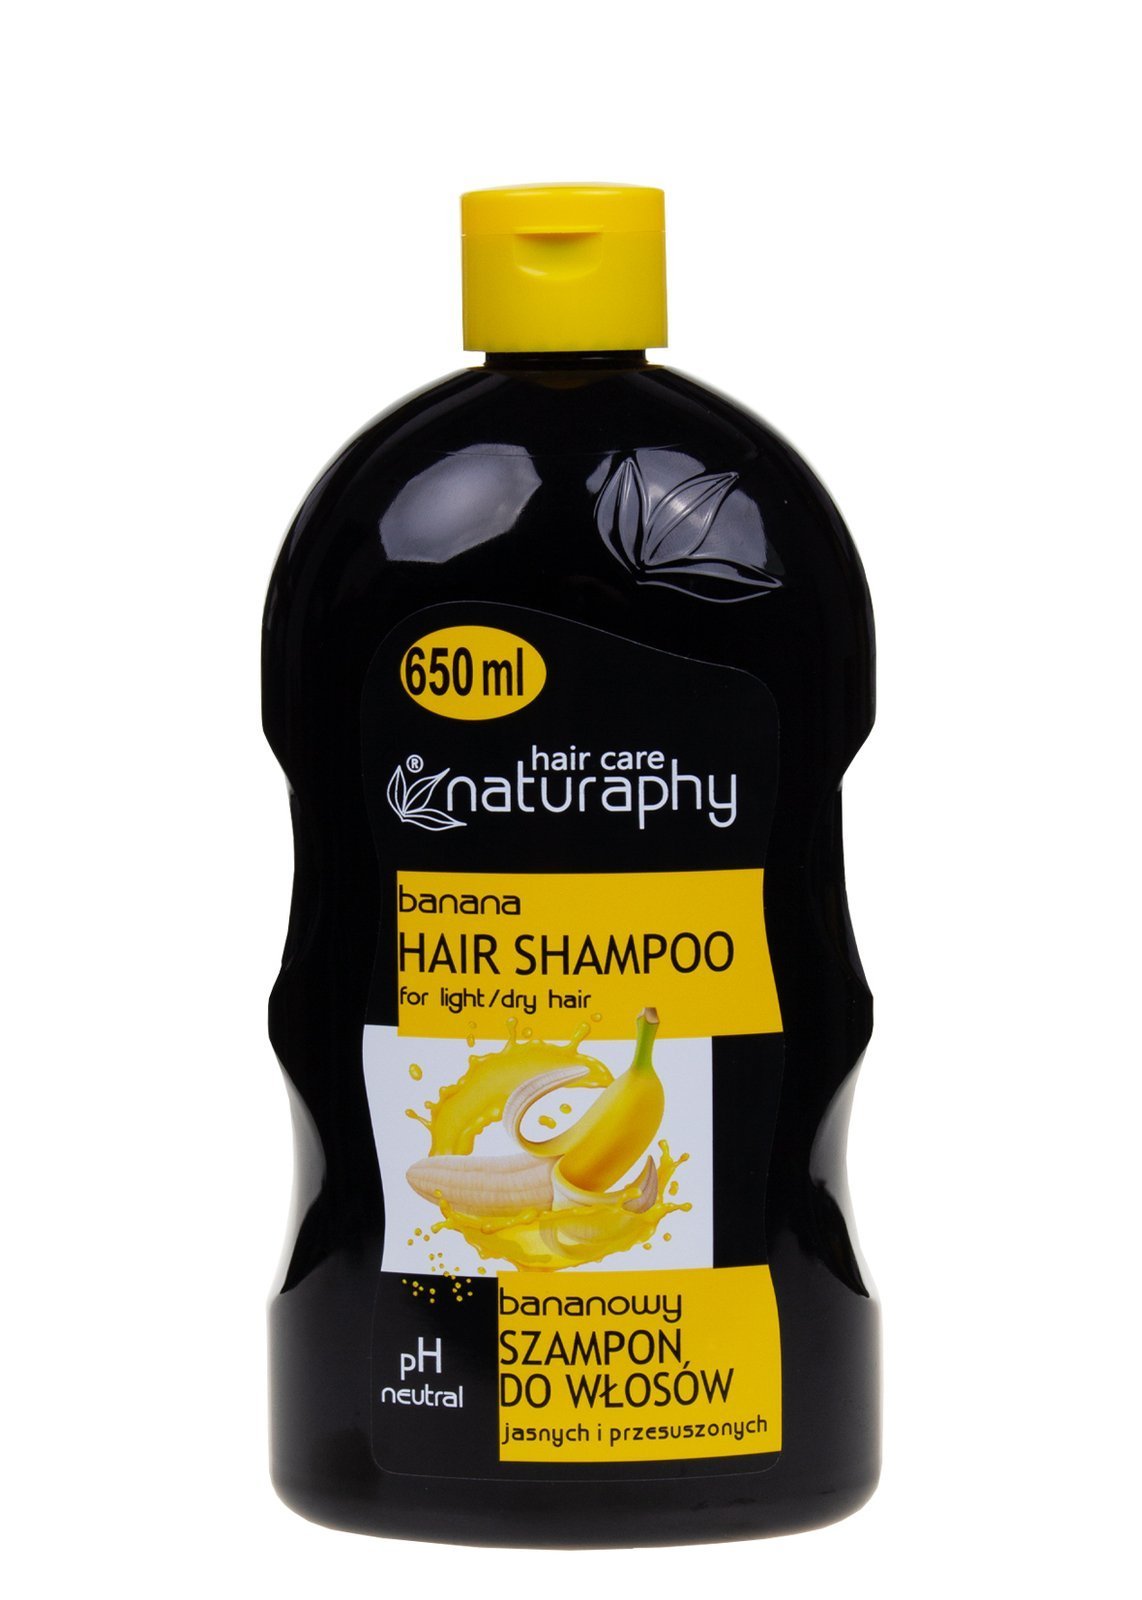 bananowy szampon do włosów